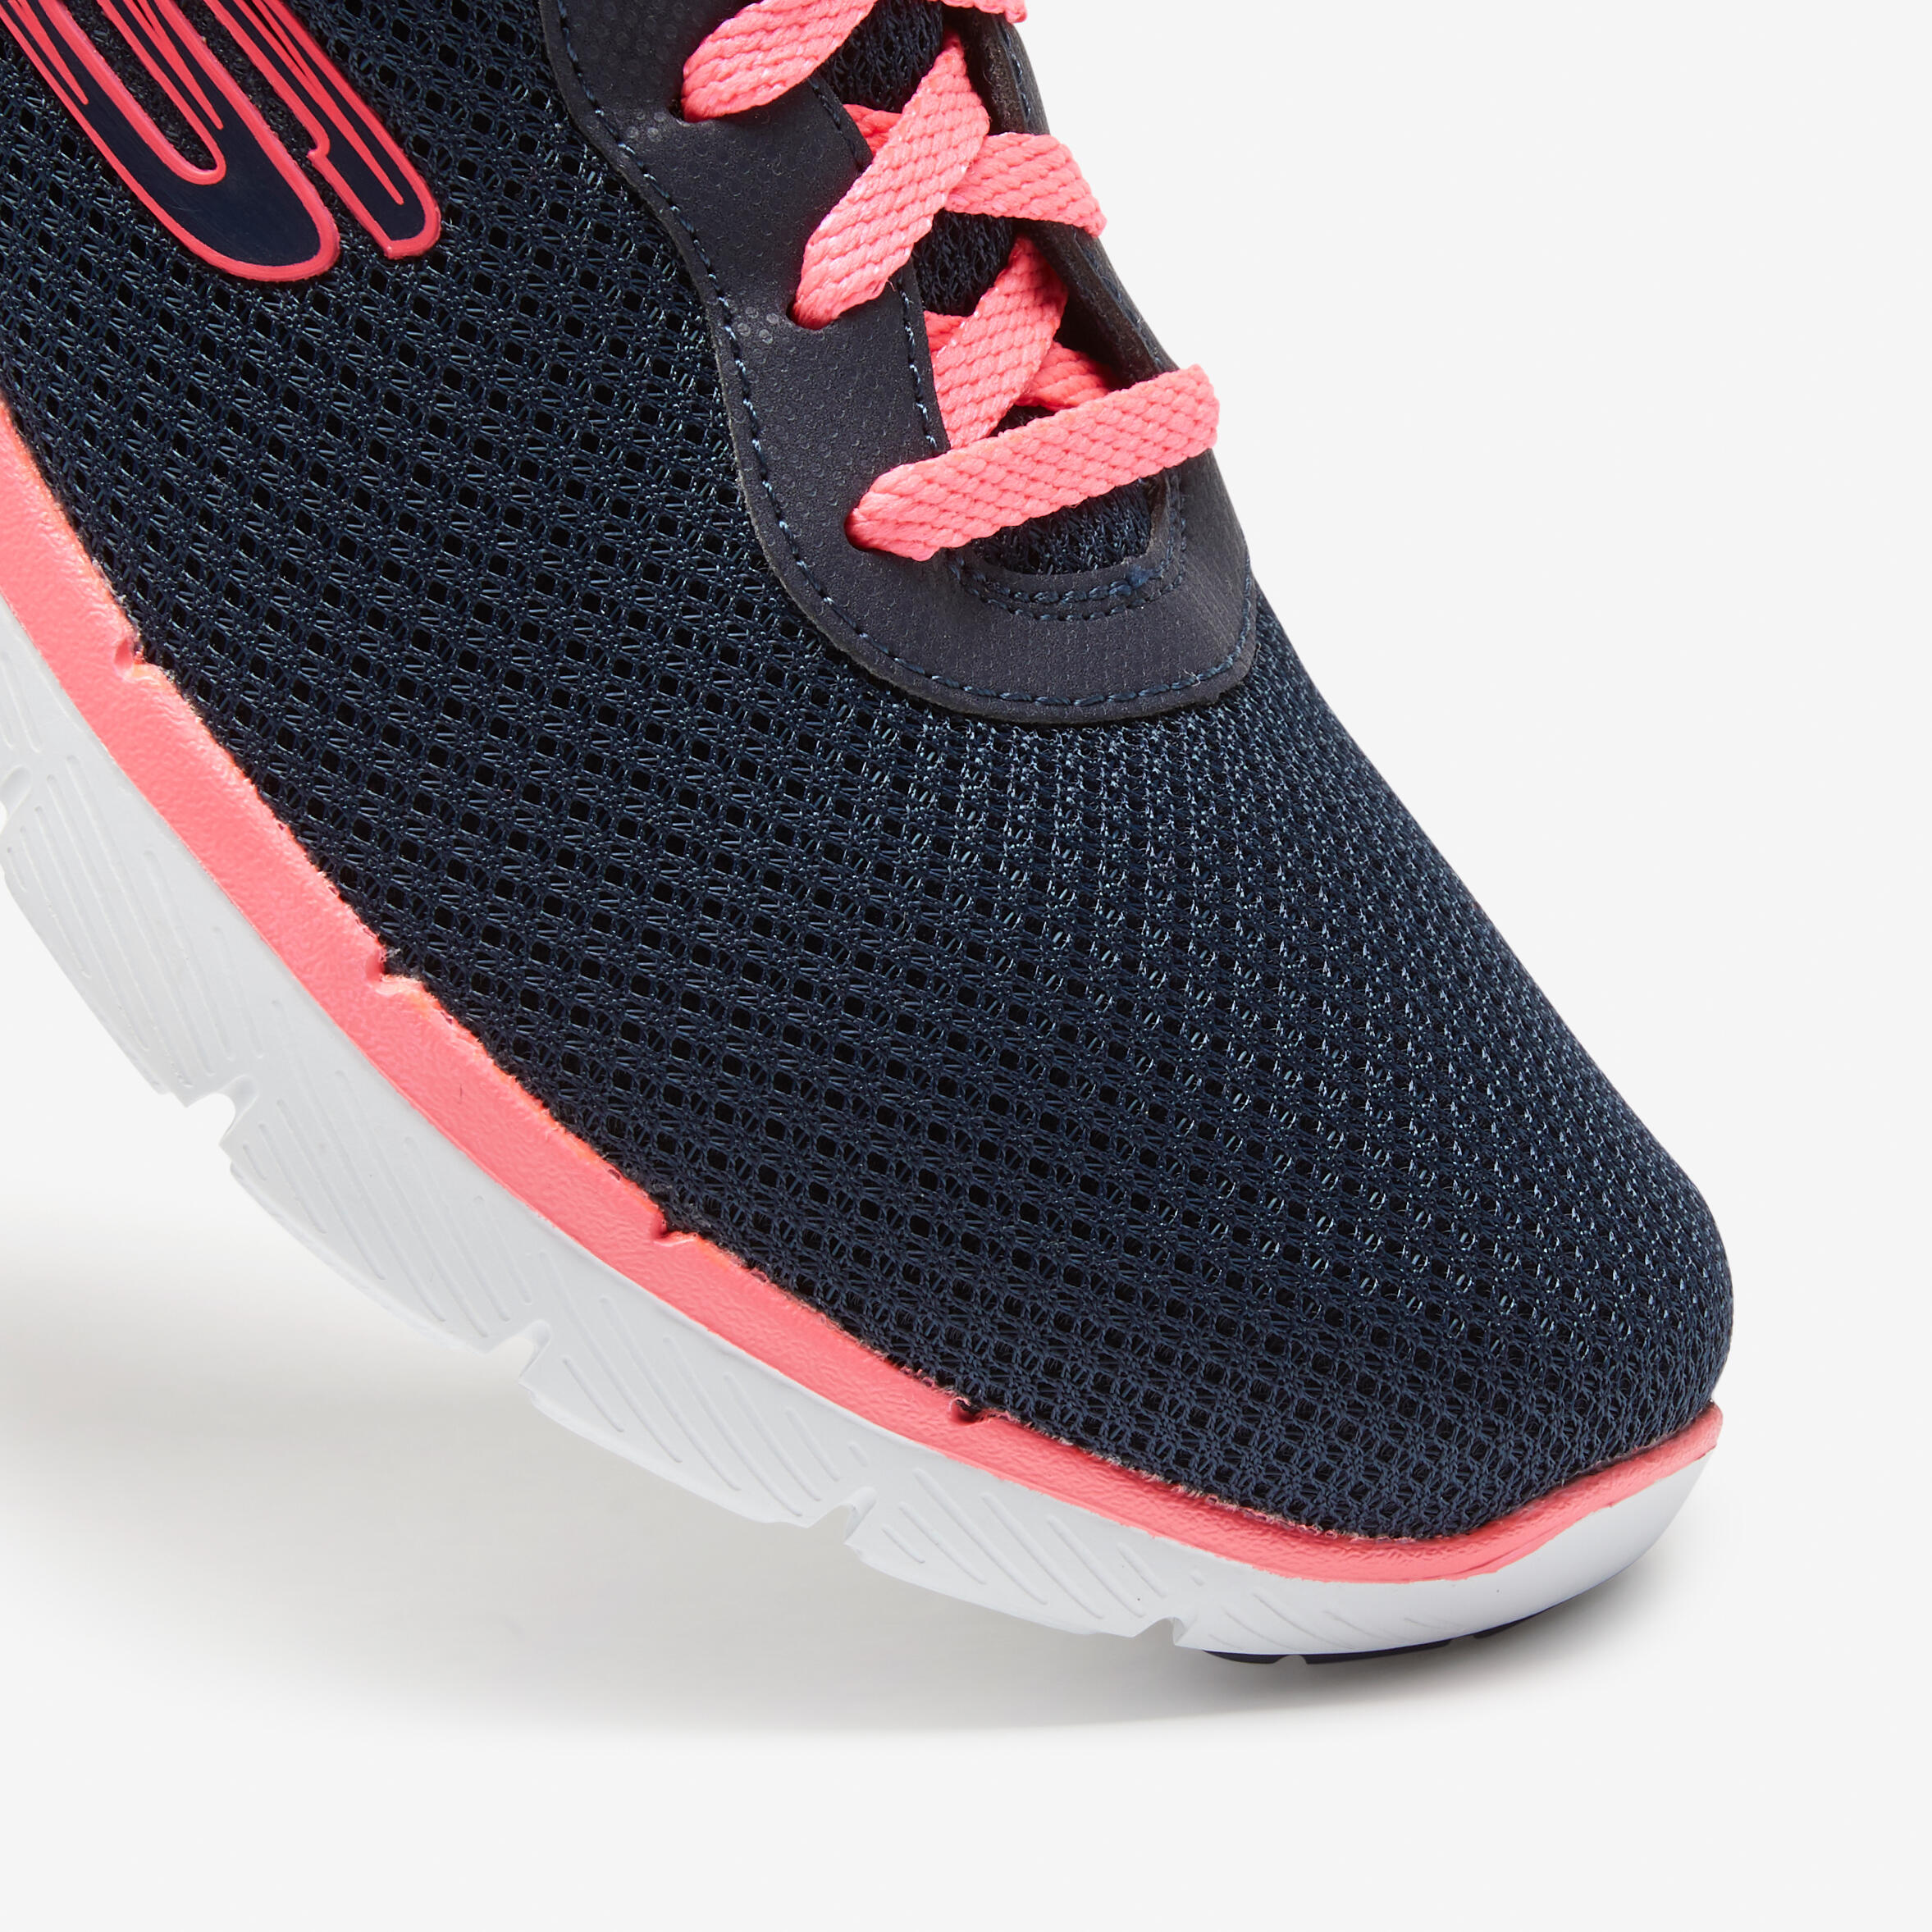 Flex Appeal Women's Fitness Walking Shoes - Blue/Pink 4/7